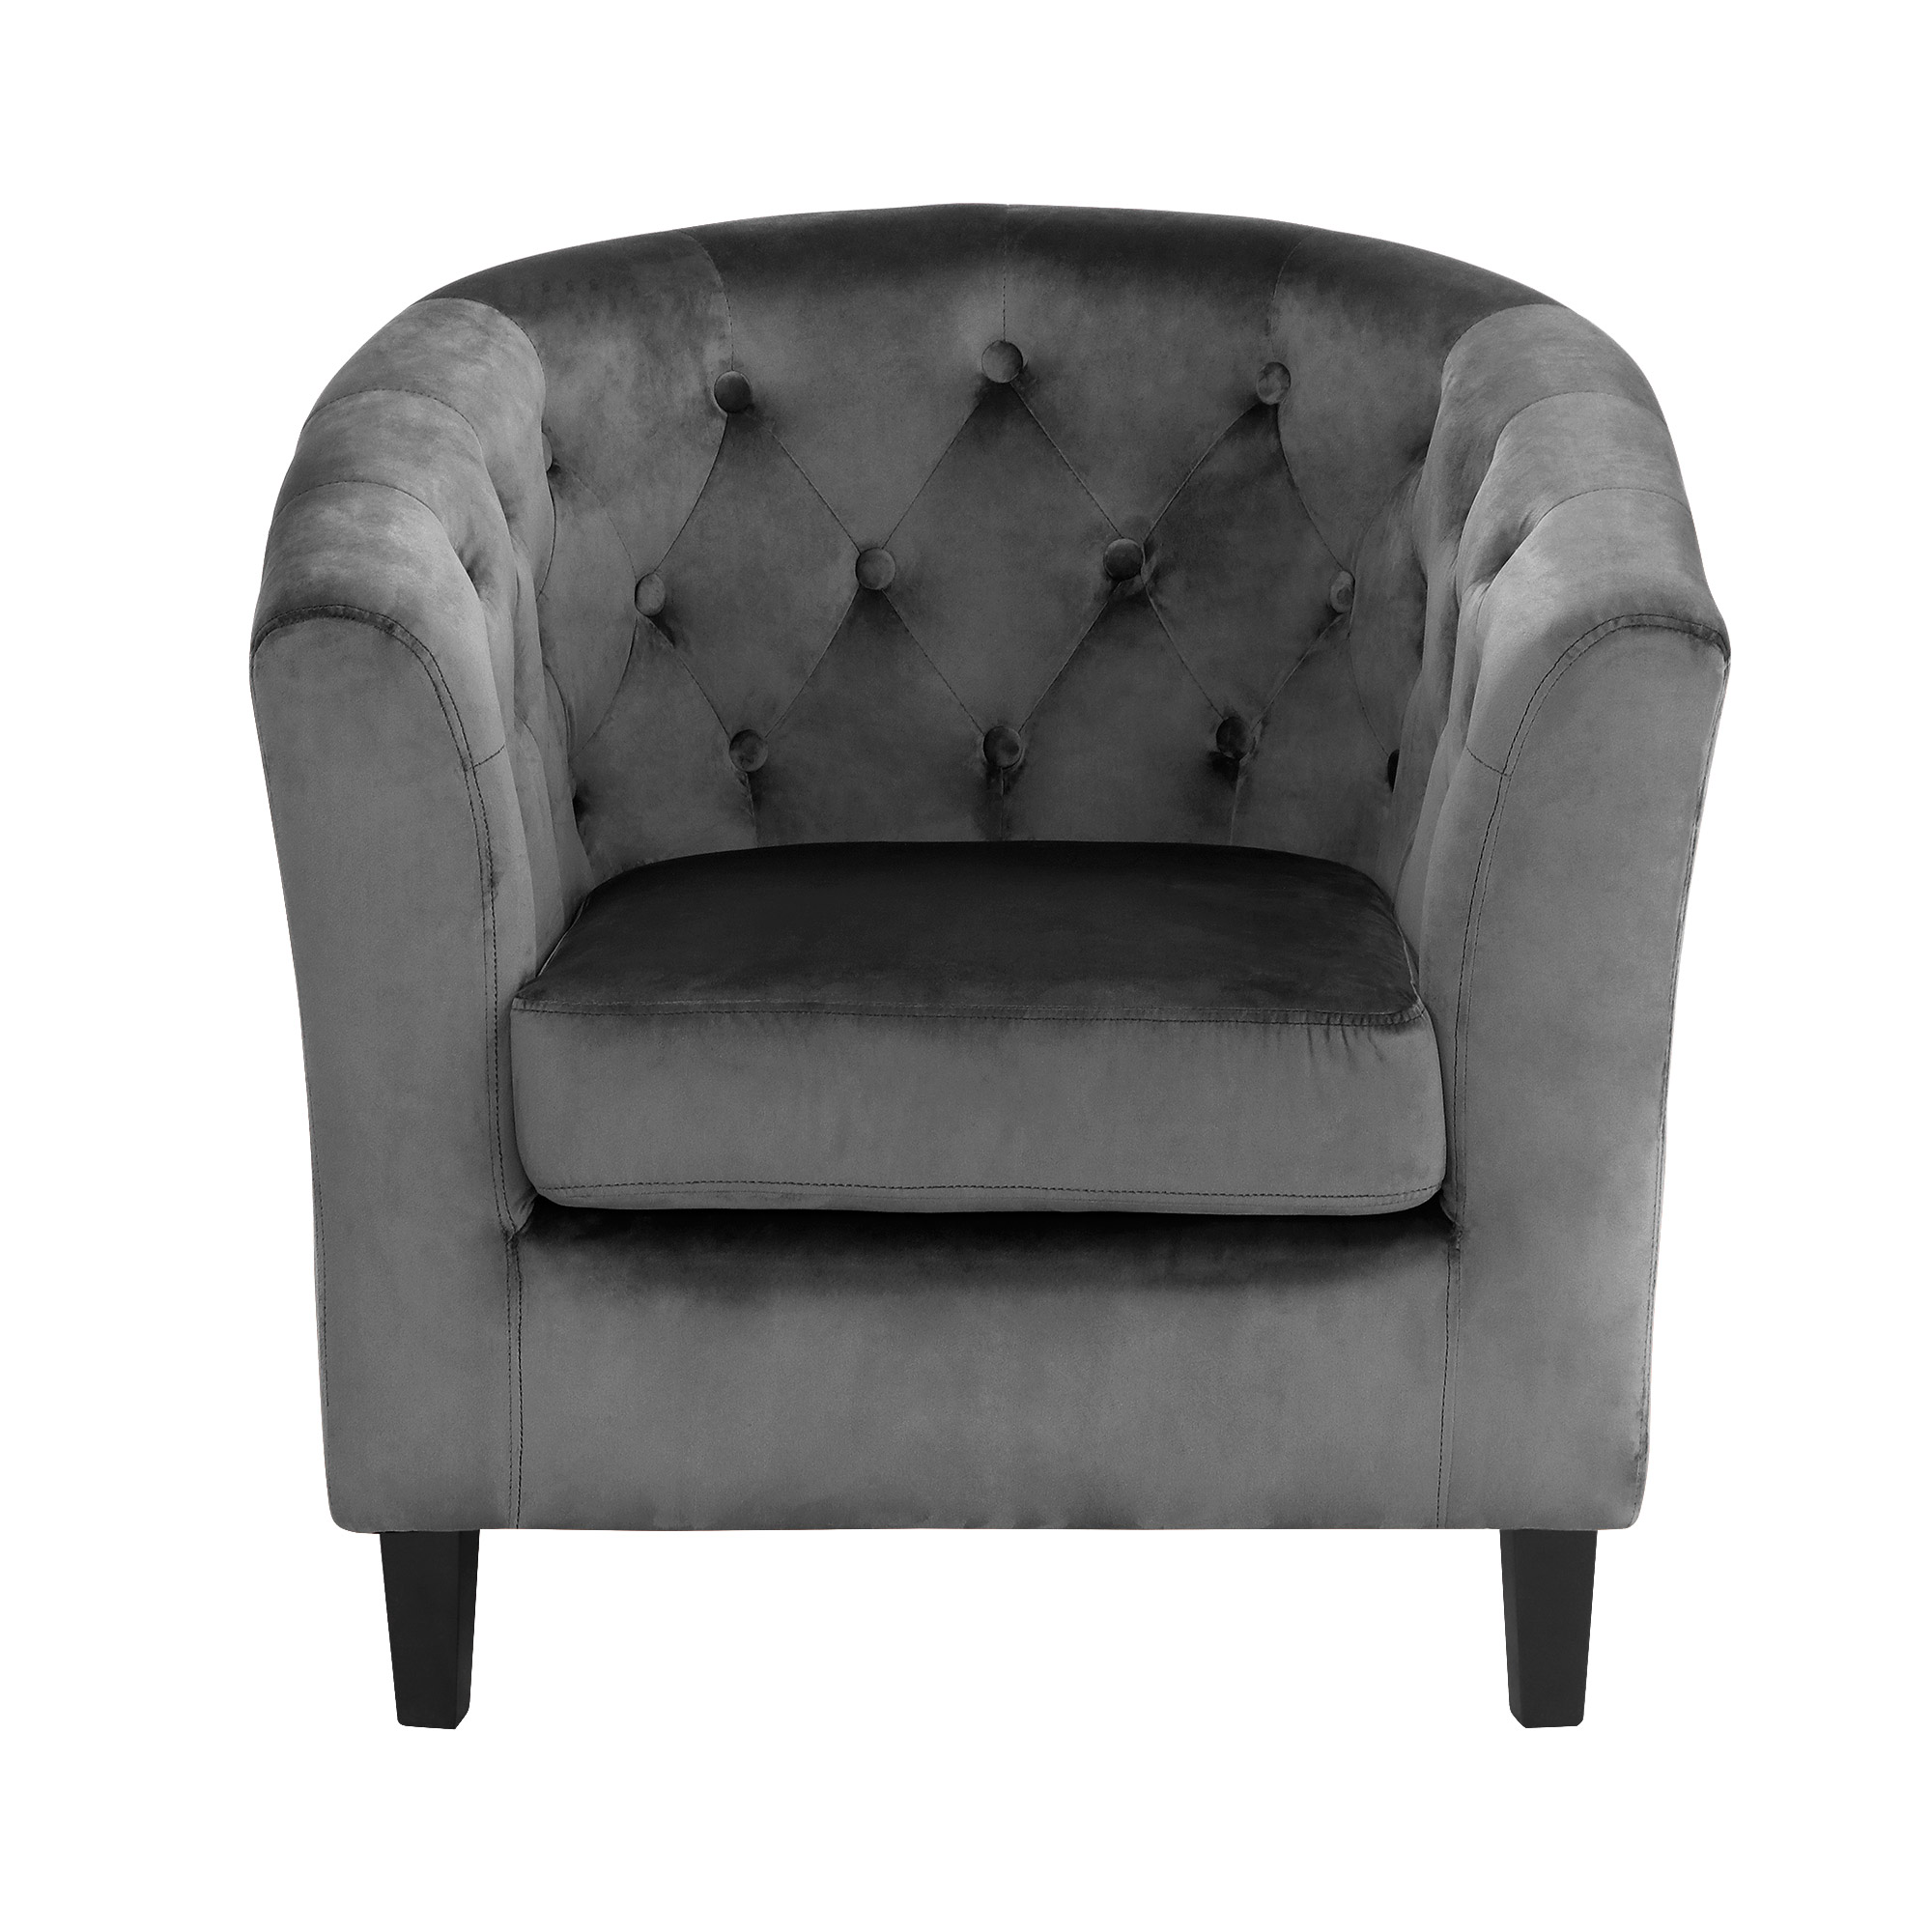 Кресло Shanshi Оливия серое 72x63x71cm, цвет серый - фото 2